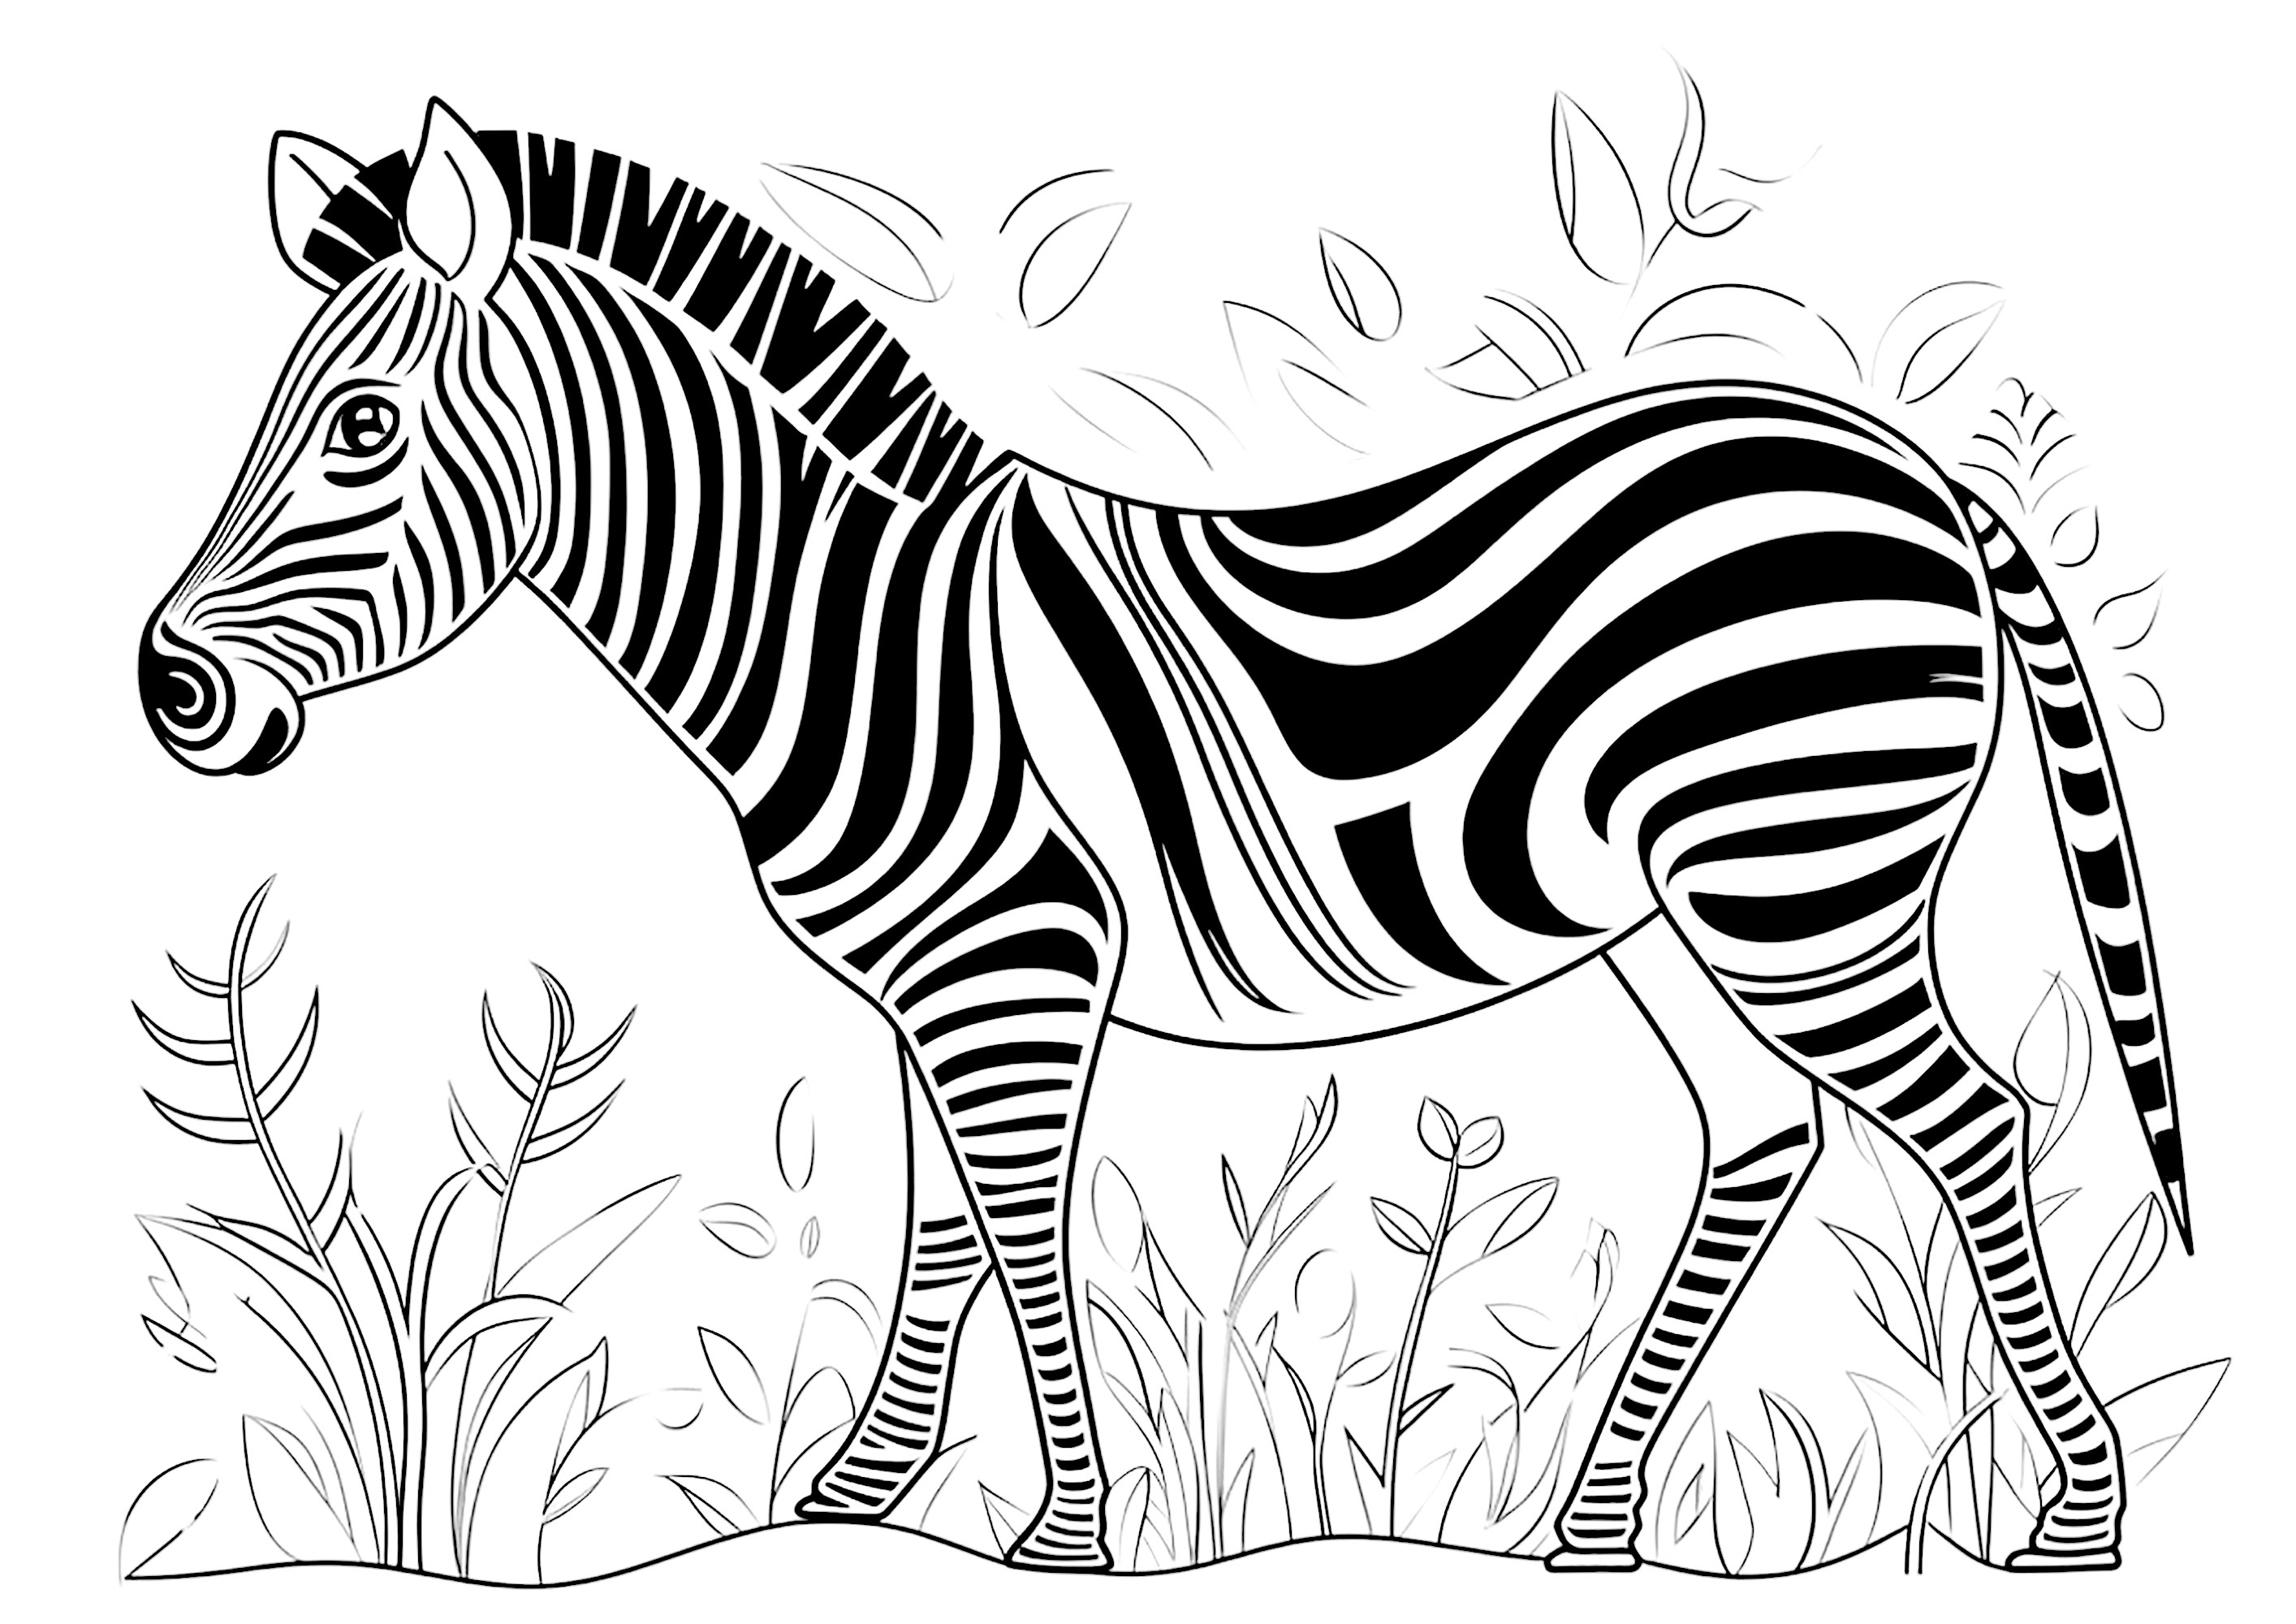 Dibujos para colorear para niños de Cebras para imprimir